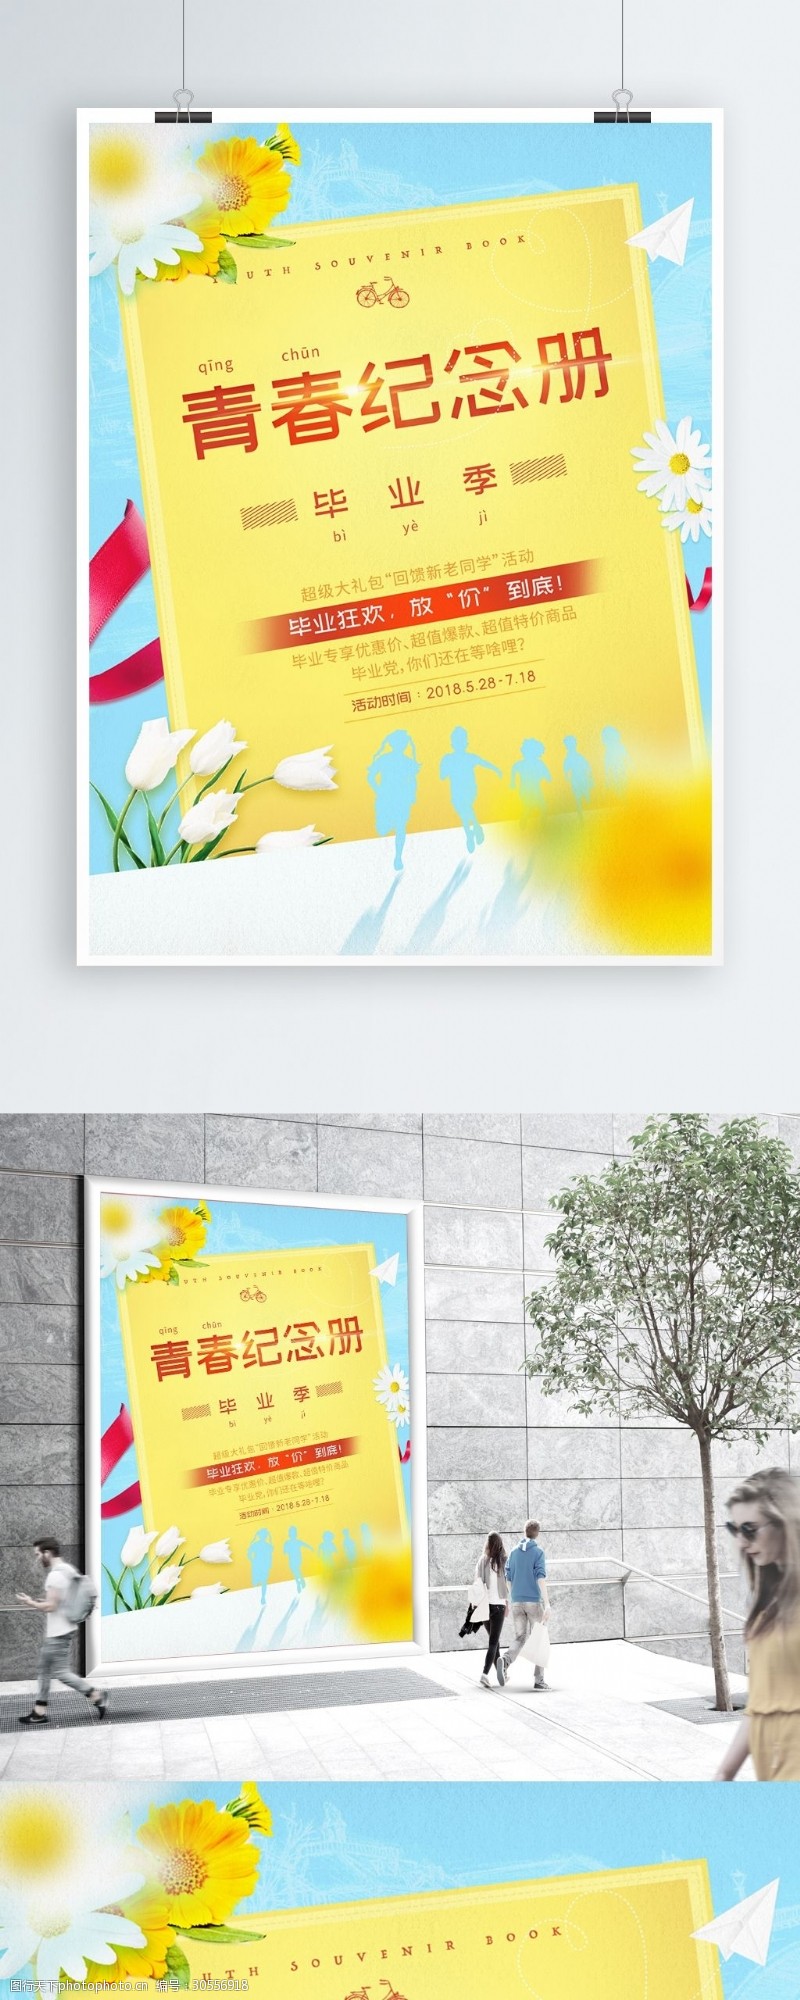 原创小清新毕业季青春纪念册促销商业海报